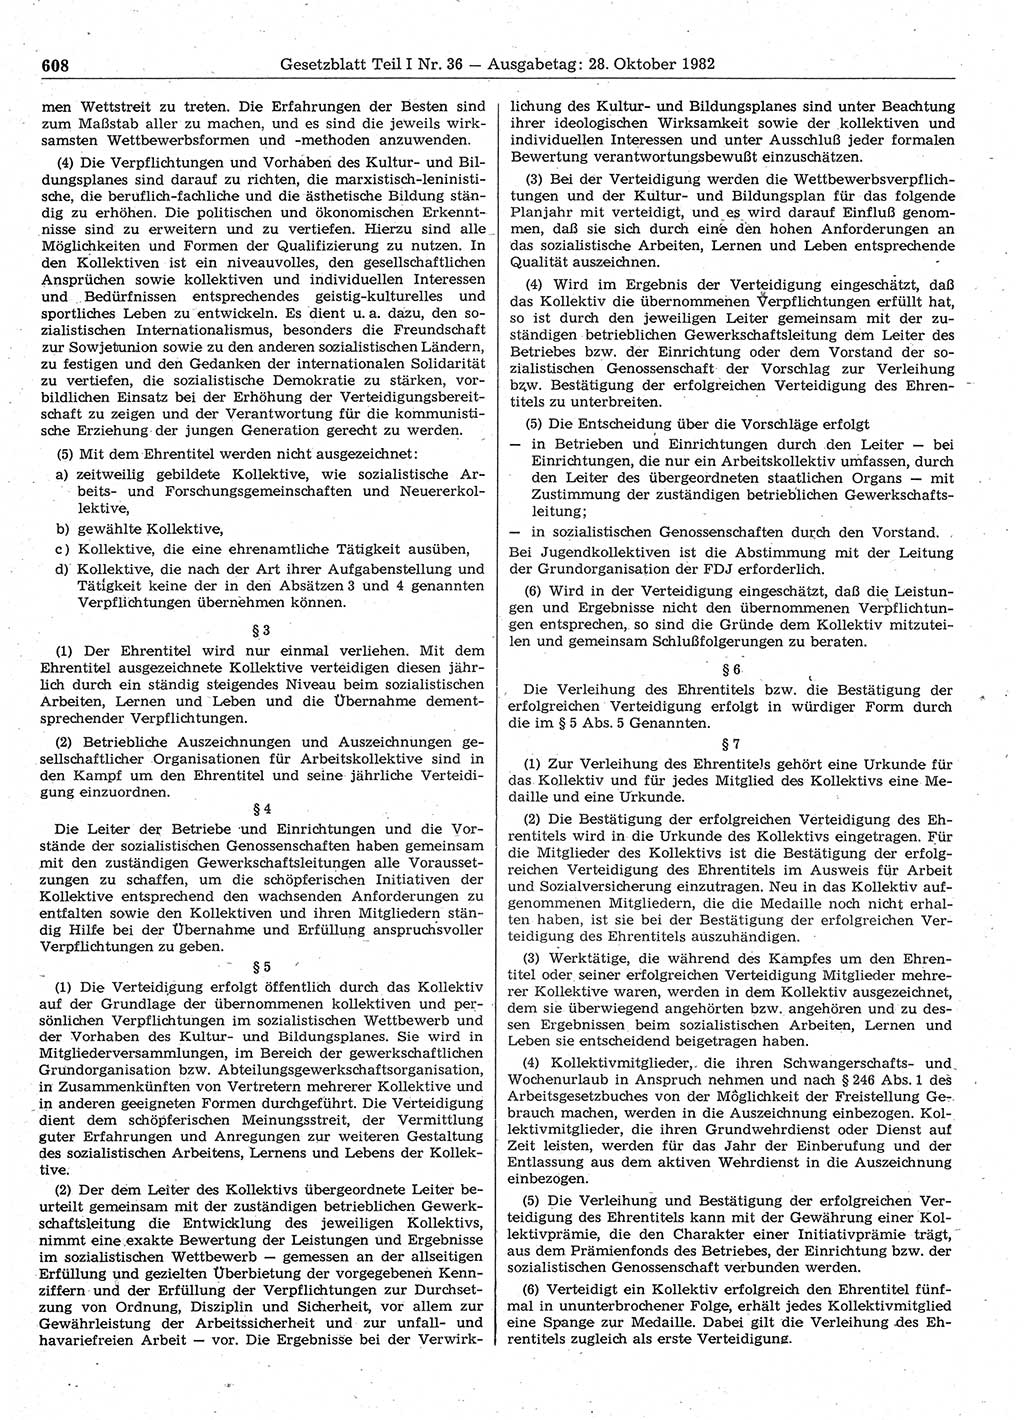 Gesetzblatt (GBl.) der Deutschen Demokratischen Republik (DDR) Teil Ⅰ 1982, Seite 608 (GBl. DDR Ⅰ 1982, S. 608)